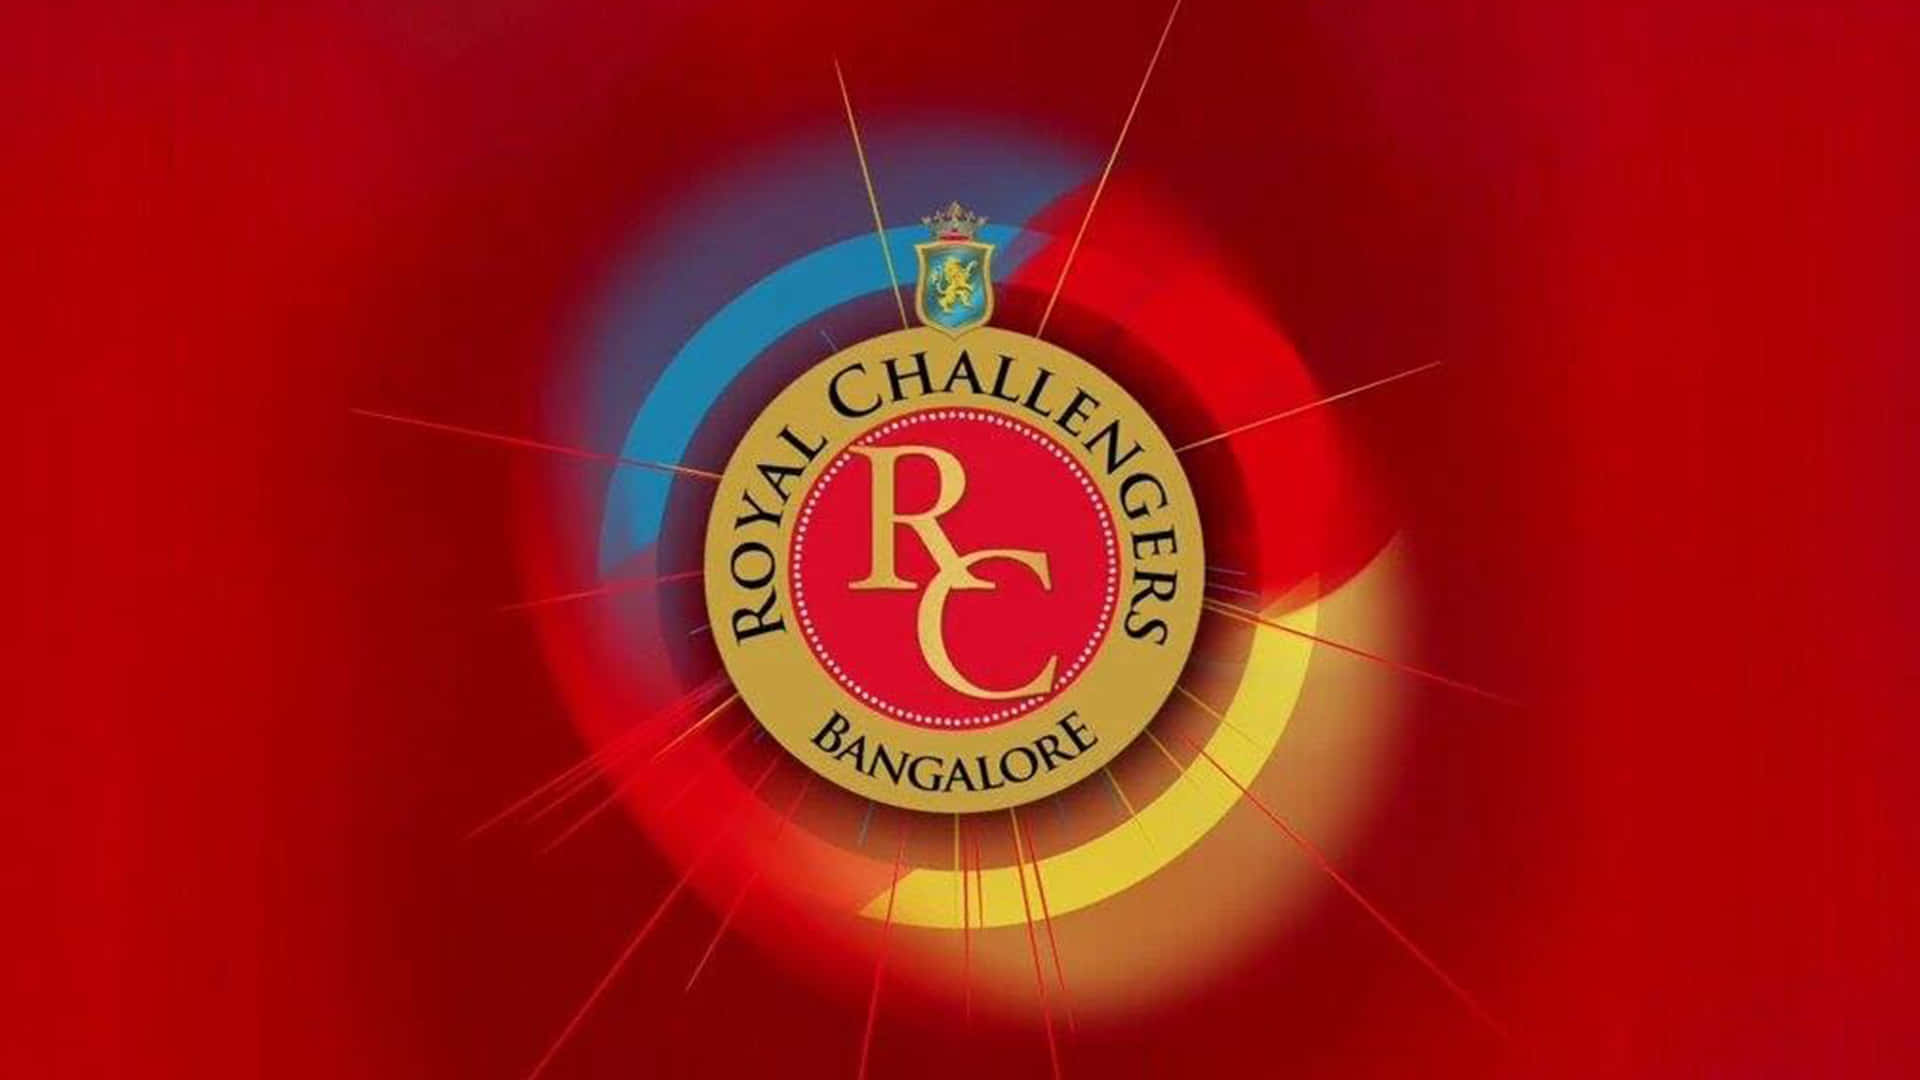 Royalchallengers Bangalore: Campeones De Oportunidad